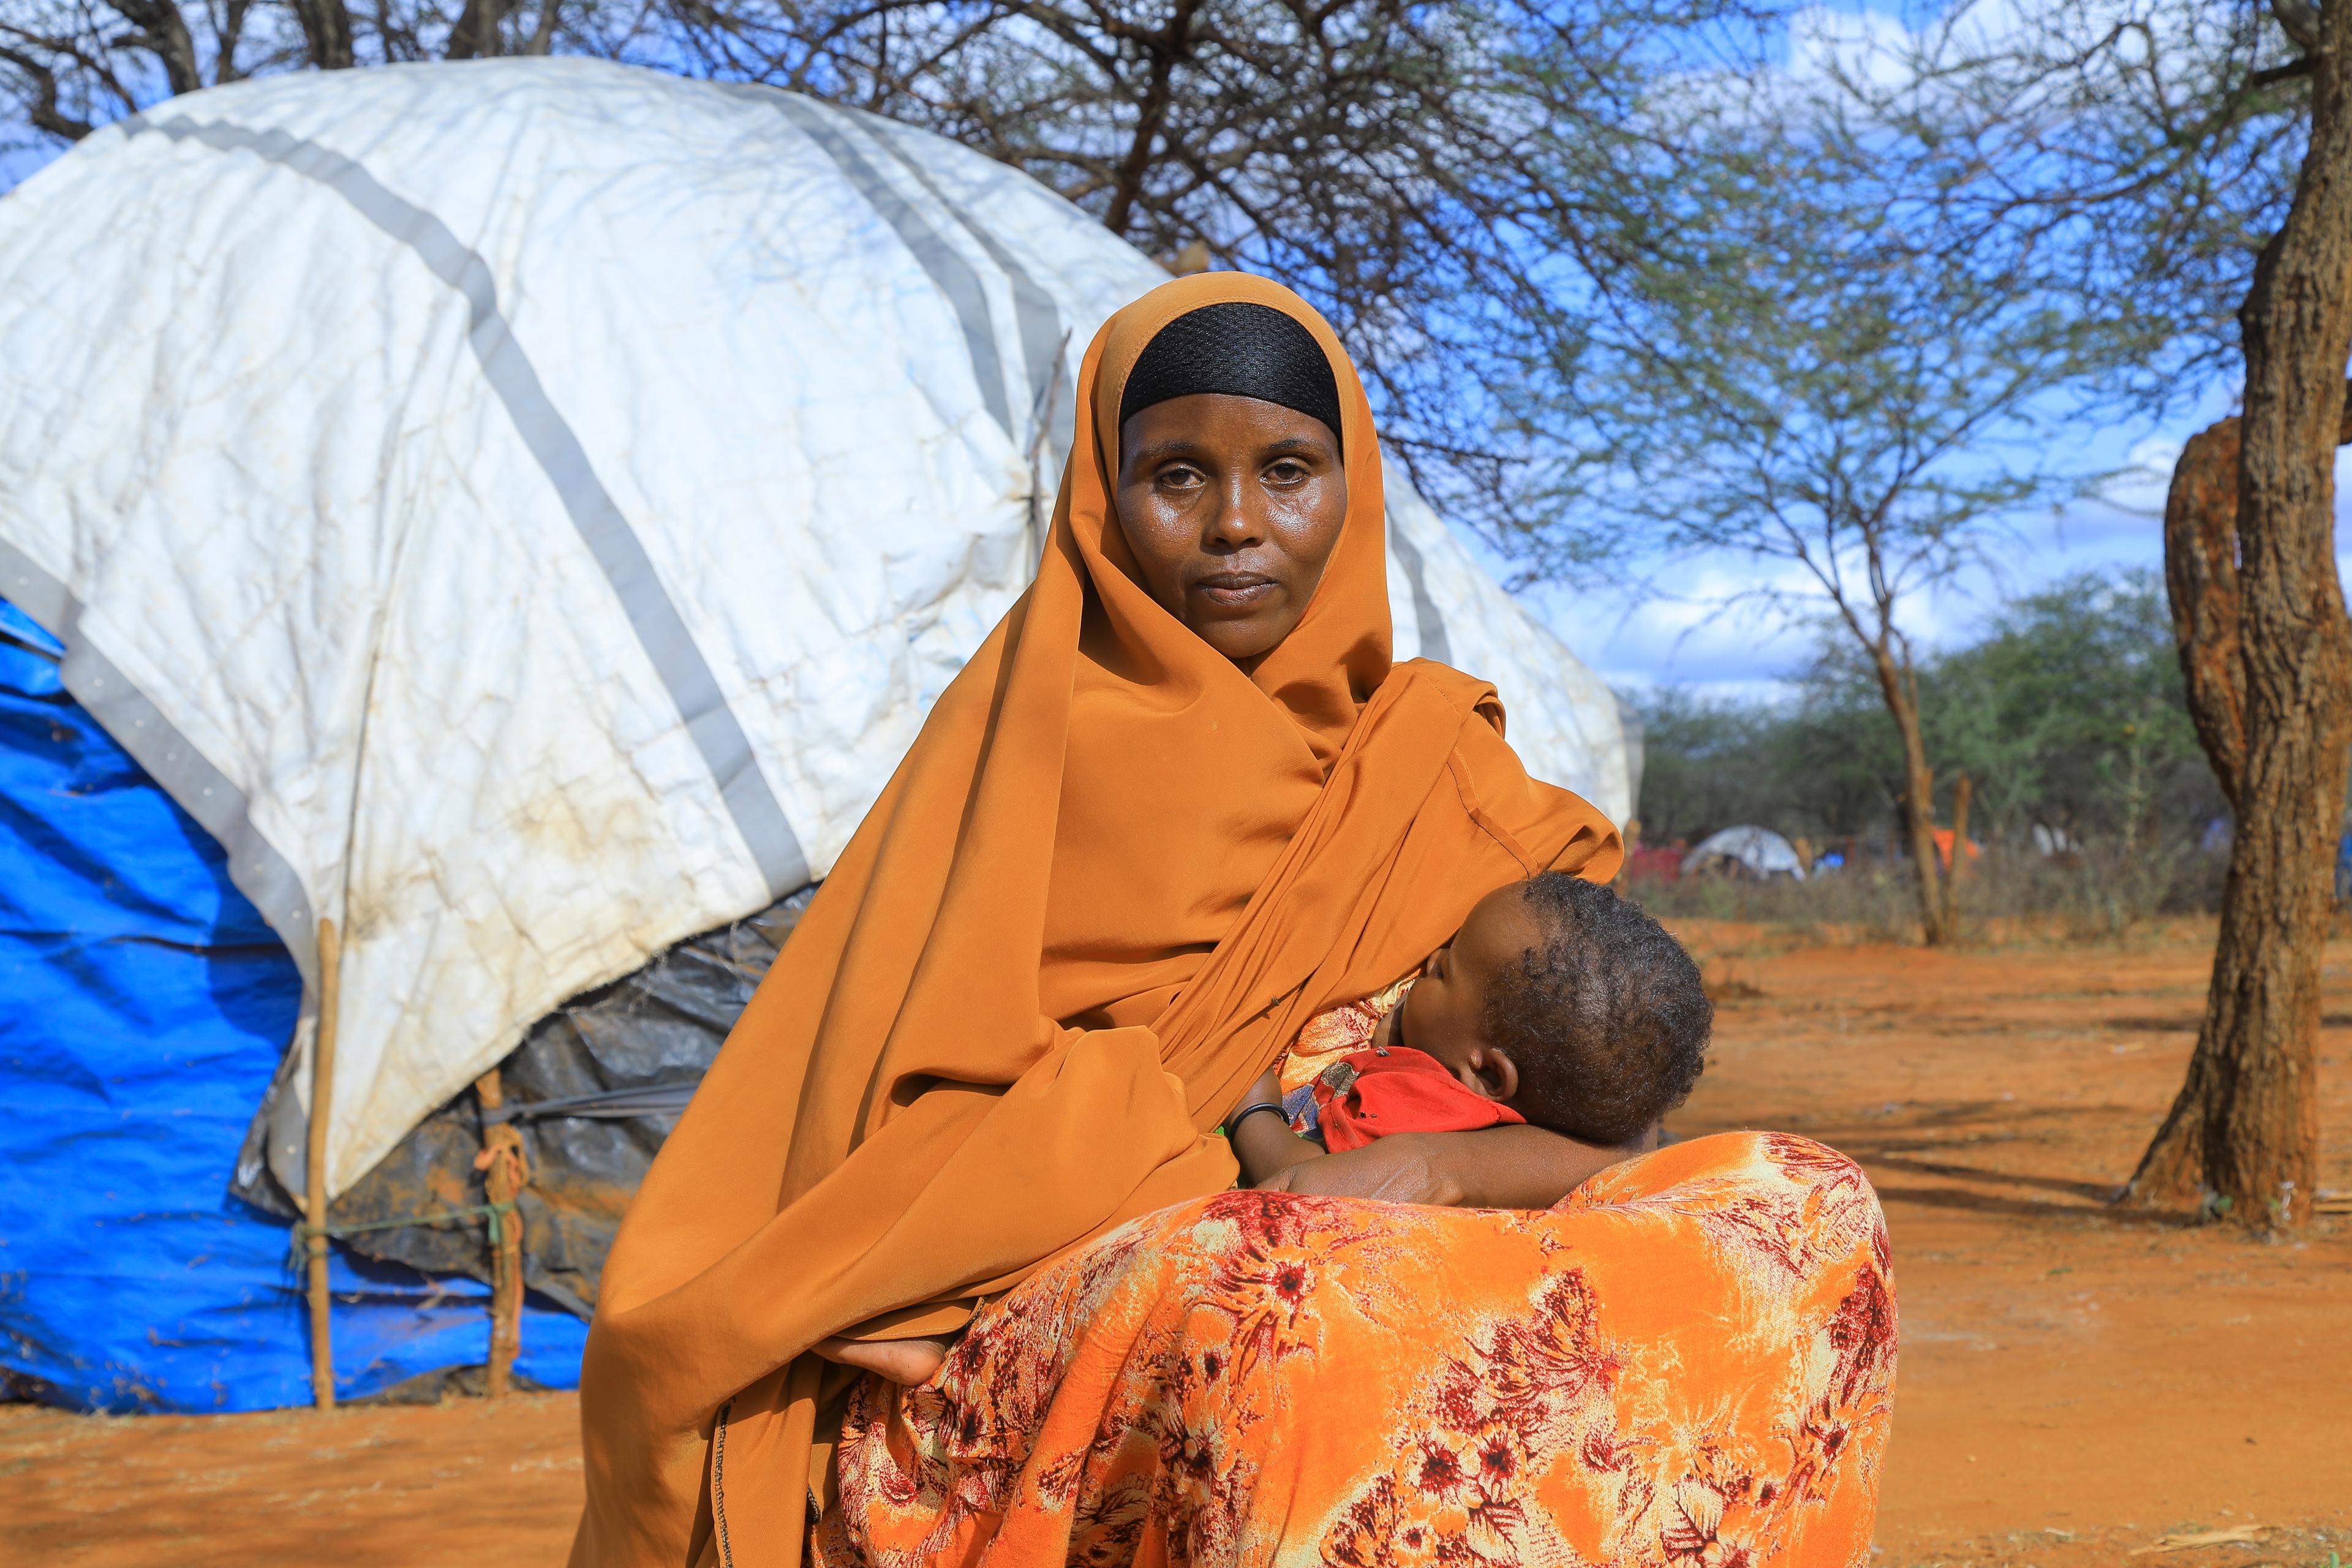 Une femme portant un foulard et une robe orange allaite un enfant devant son habitation.